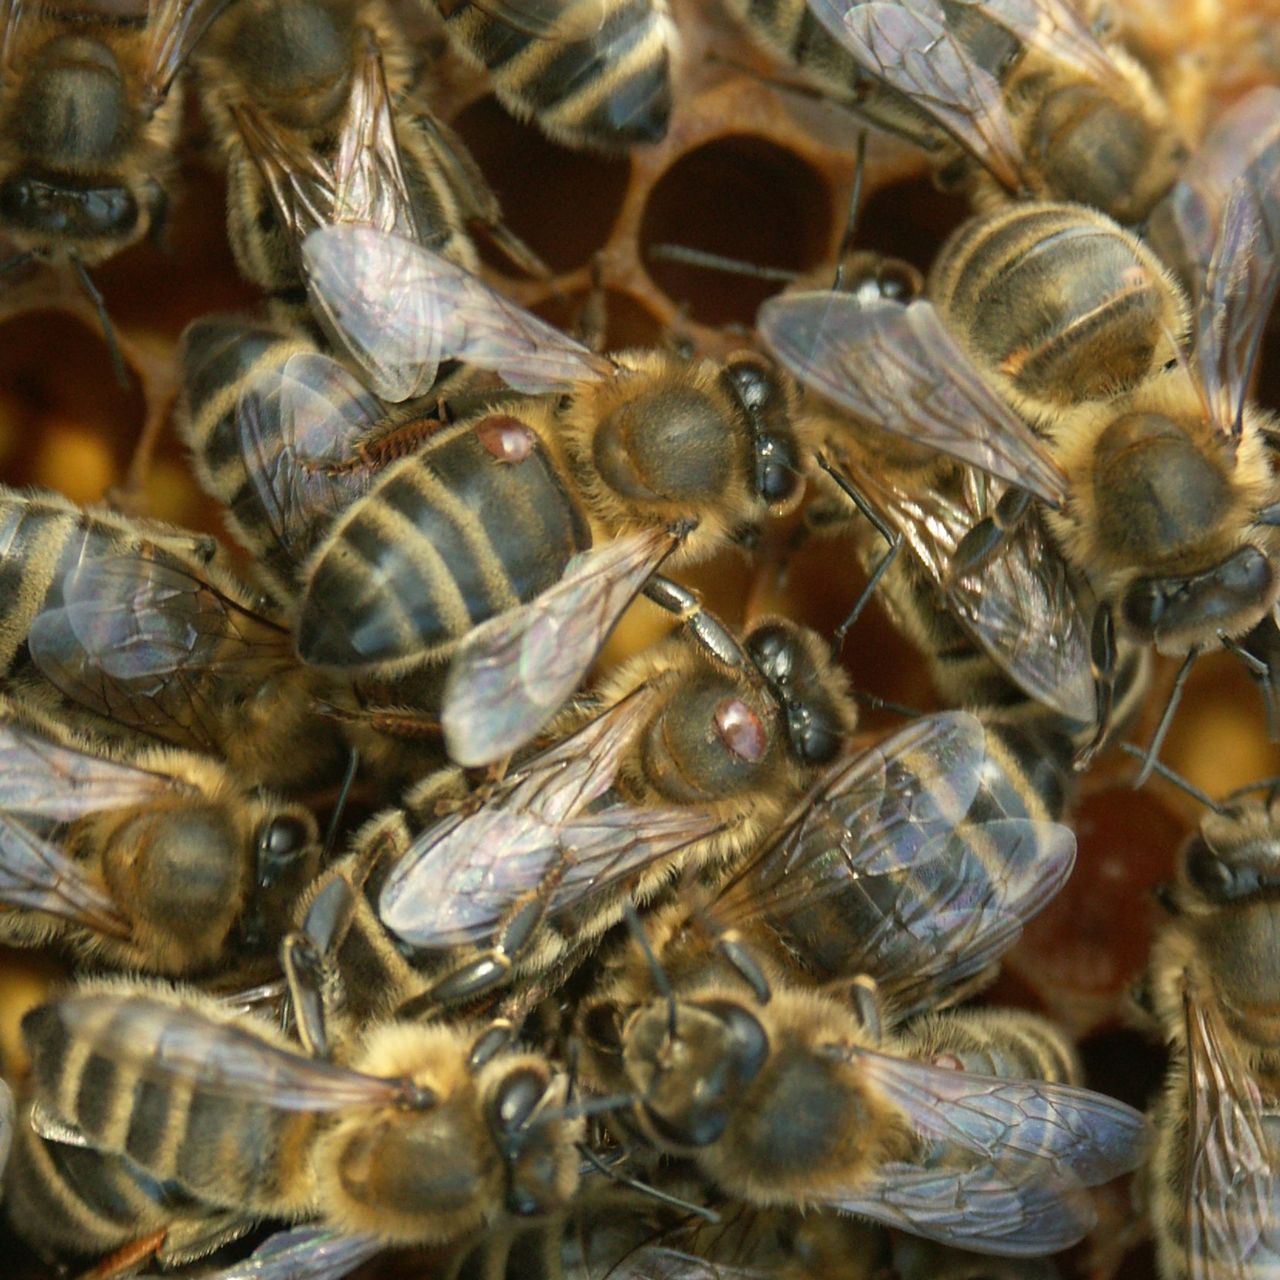 Bijen waarvan drie met varroamijten op de schouder (foto: Bram Cornelissen)